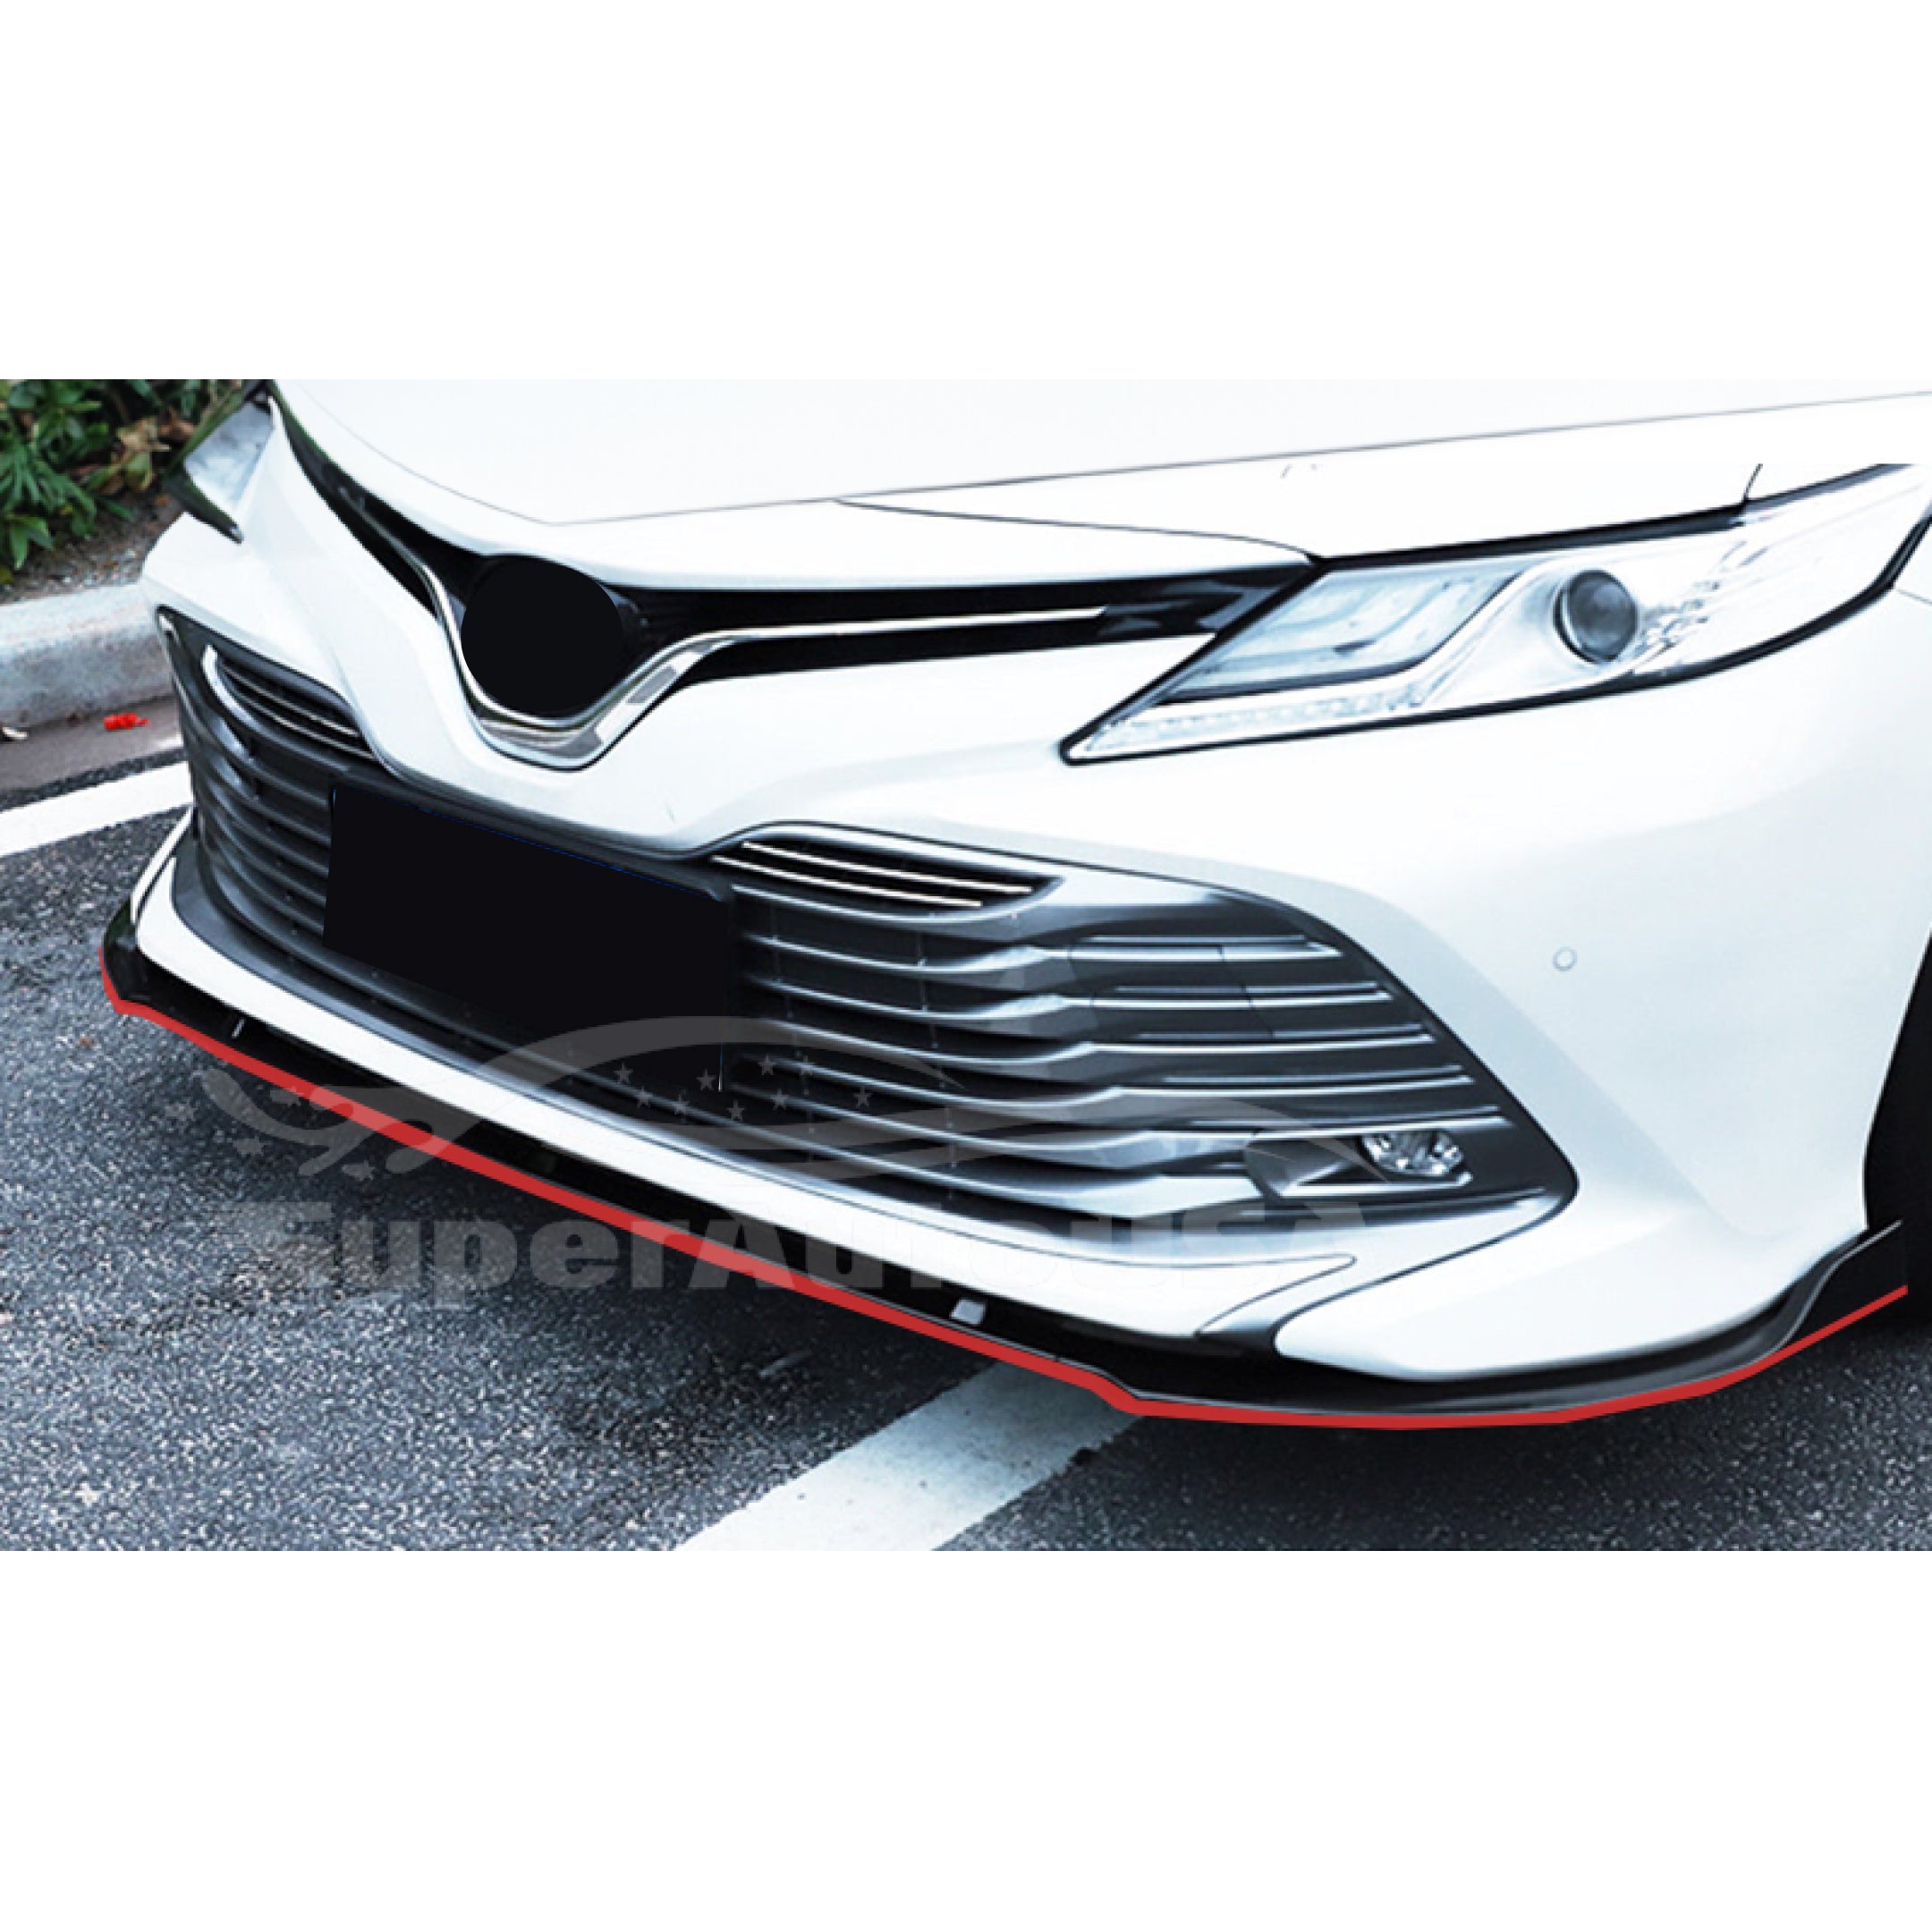 Se adapta a Toyota Camry LE XLE 2019-2022 parachoques delantero estilo TRD (negro brillante con borde rojo).